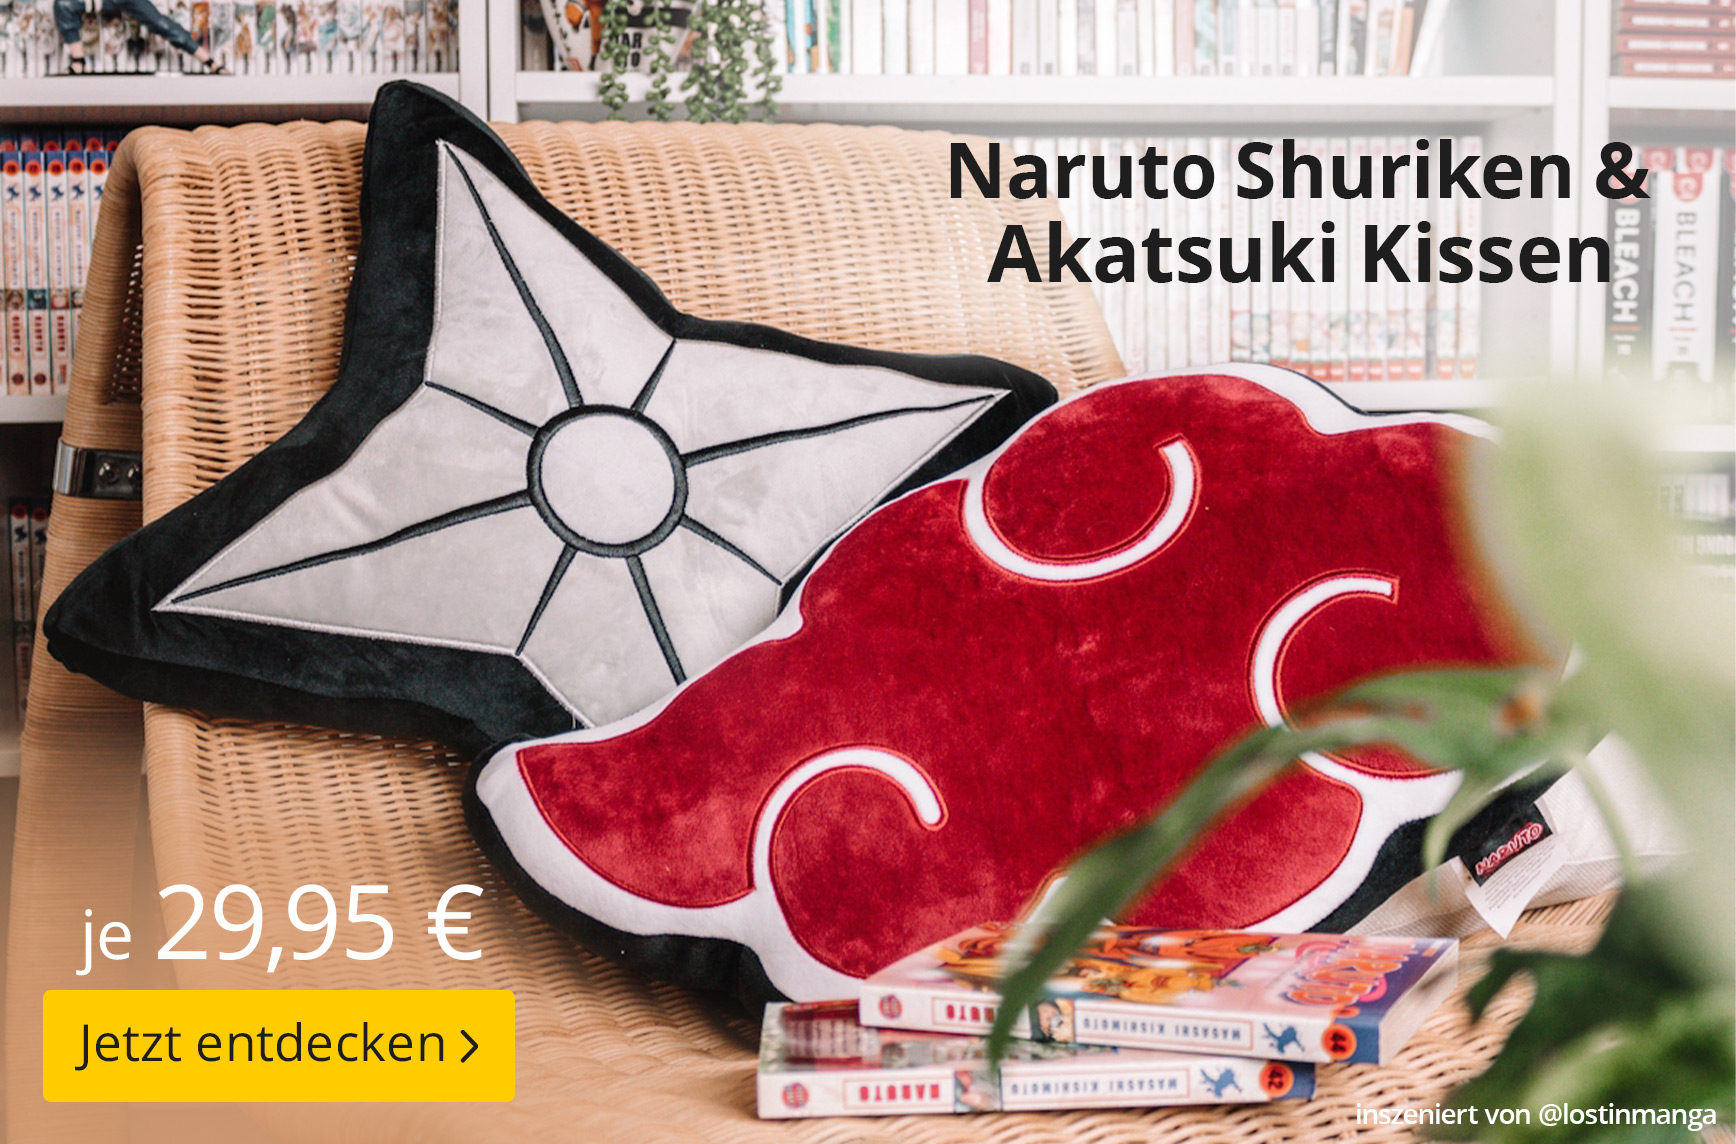 Naruto Shuriken & Akatsuki Kissen - je 29,95 EUR